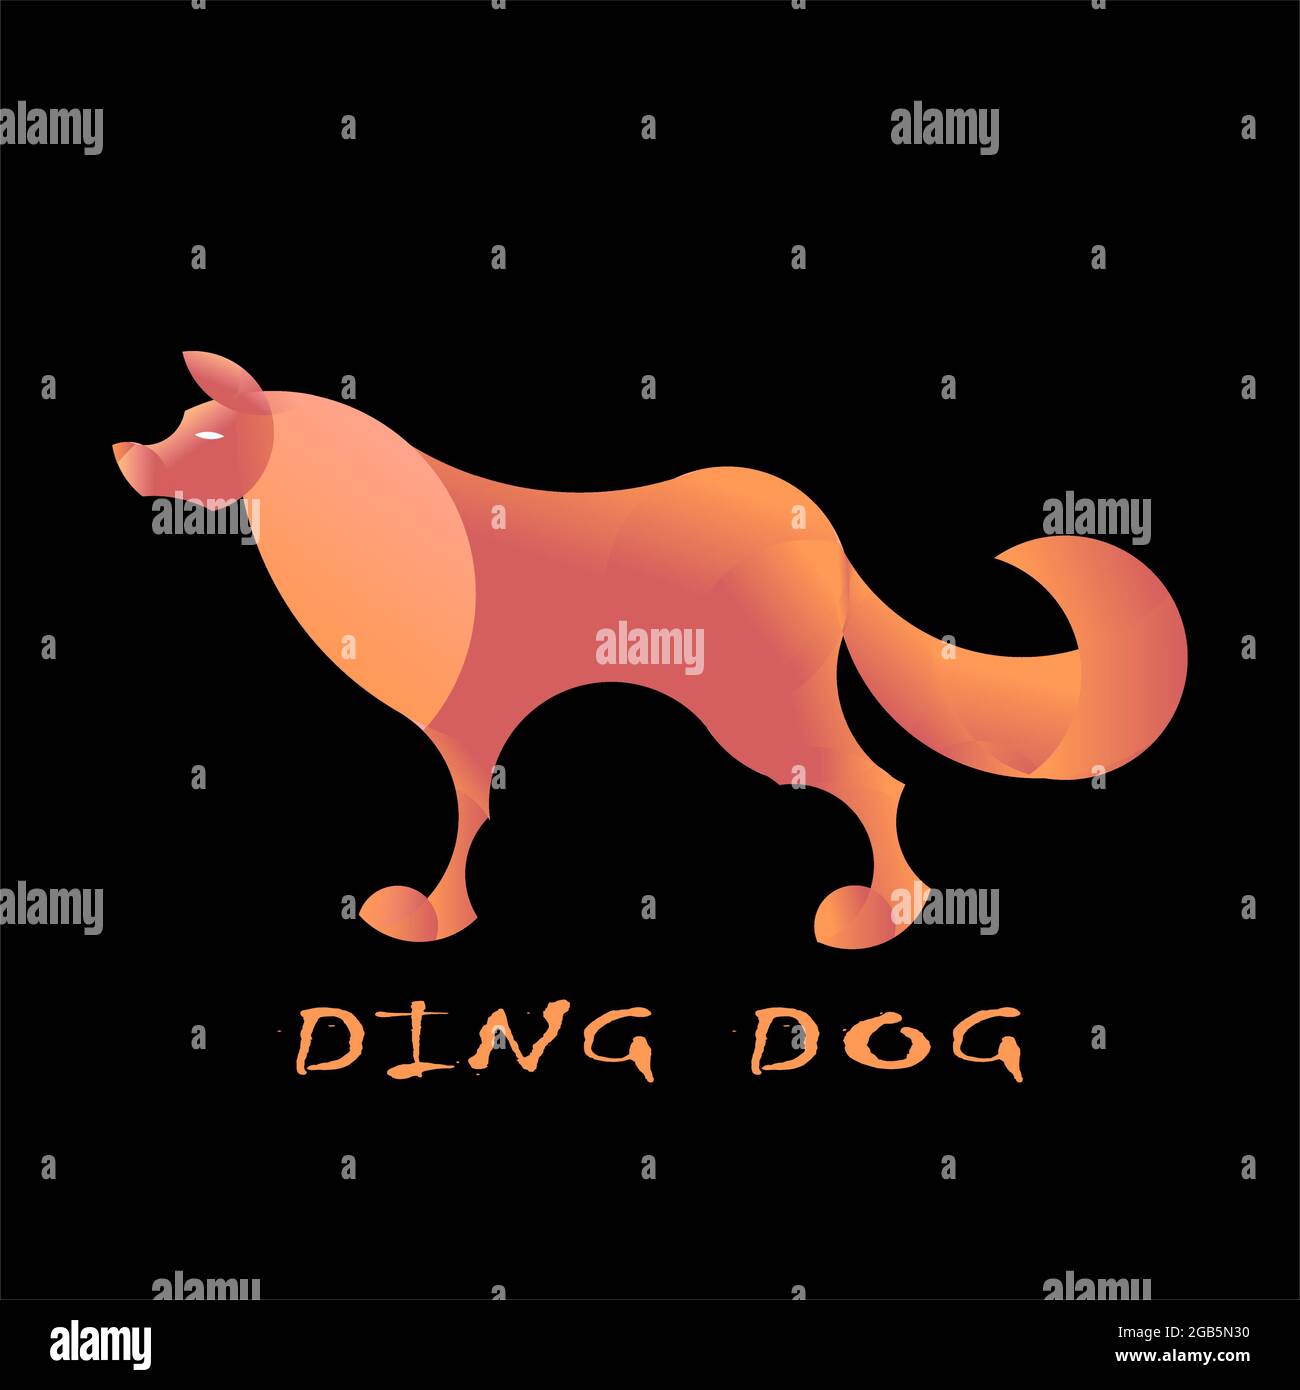 Image vectorielle d'une illustration graphique avec un rapport d'or d'un chien ou d'un loup. Convient aux logos de produits, marques, boutiques ou autres contenus Illustration de Vecteur